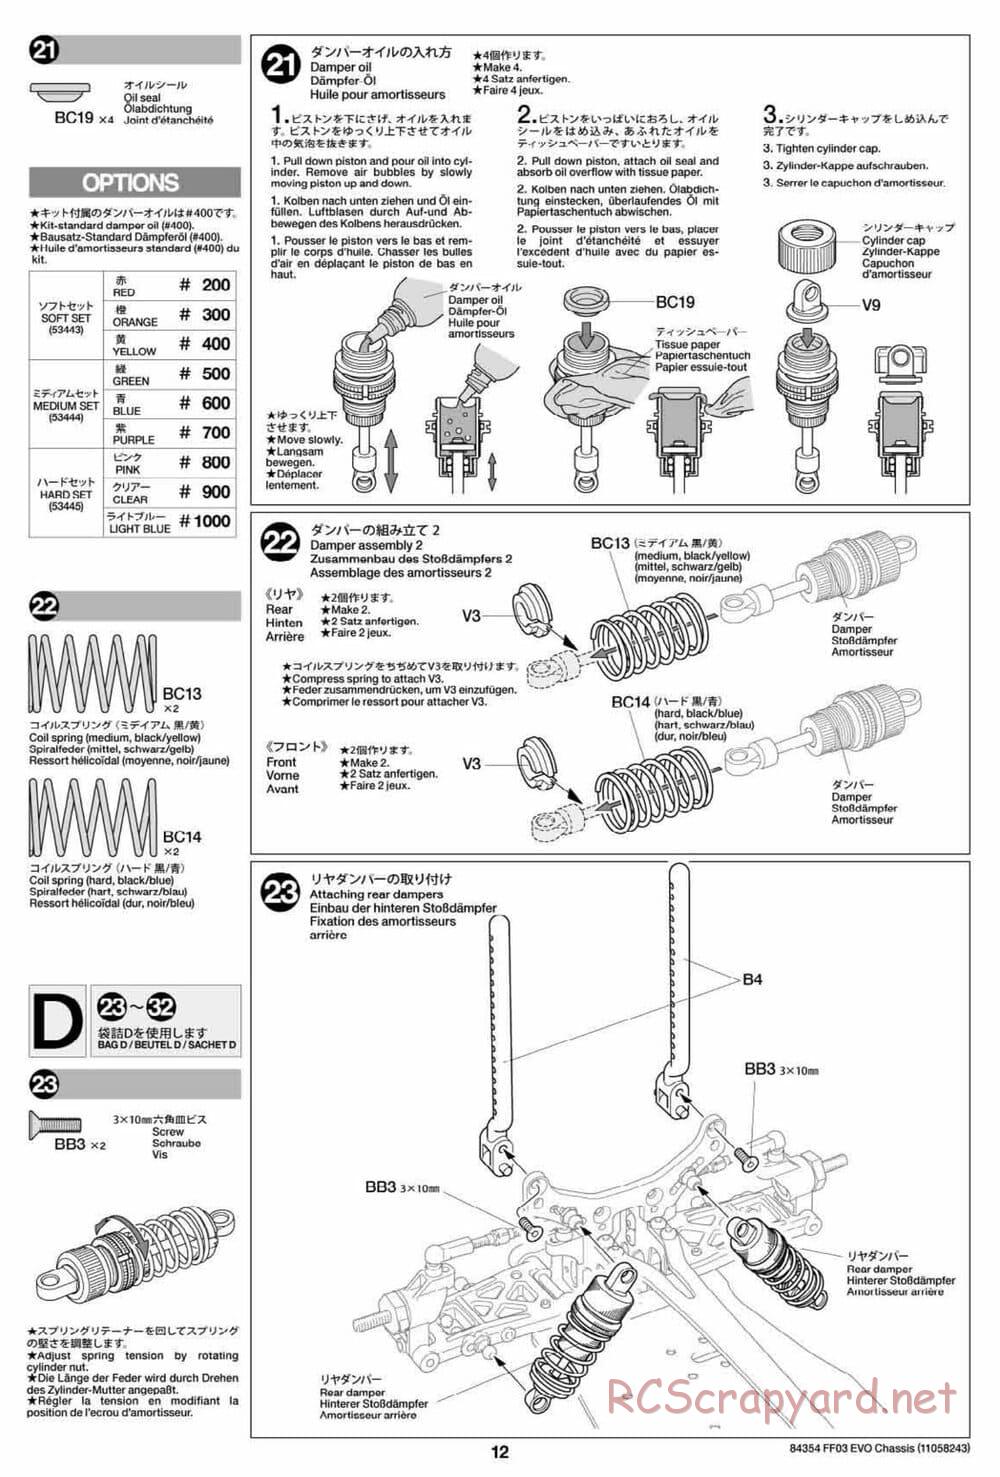 Tamiya - FF-03 Evo Chassis - Manual - Page 12